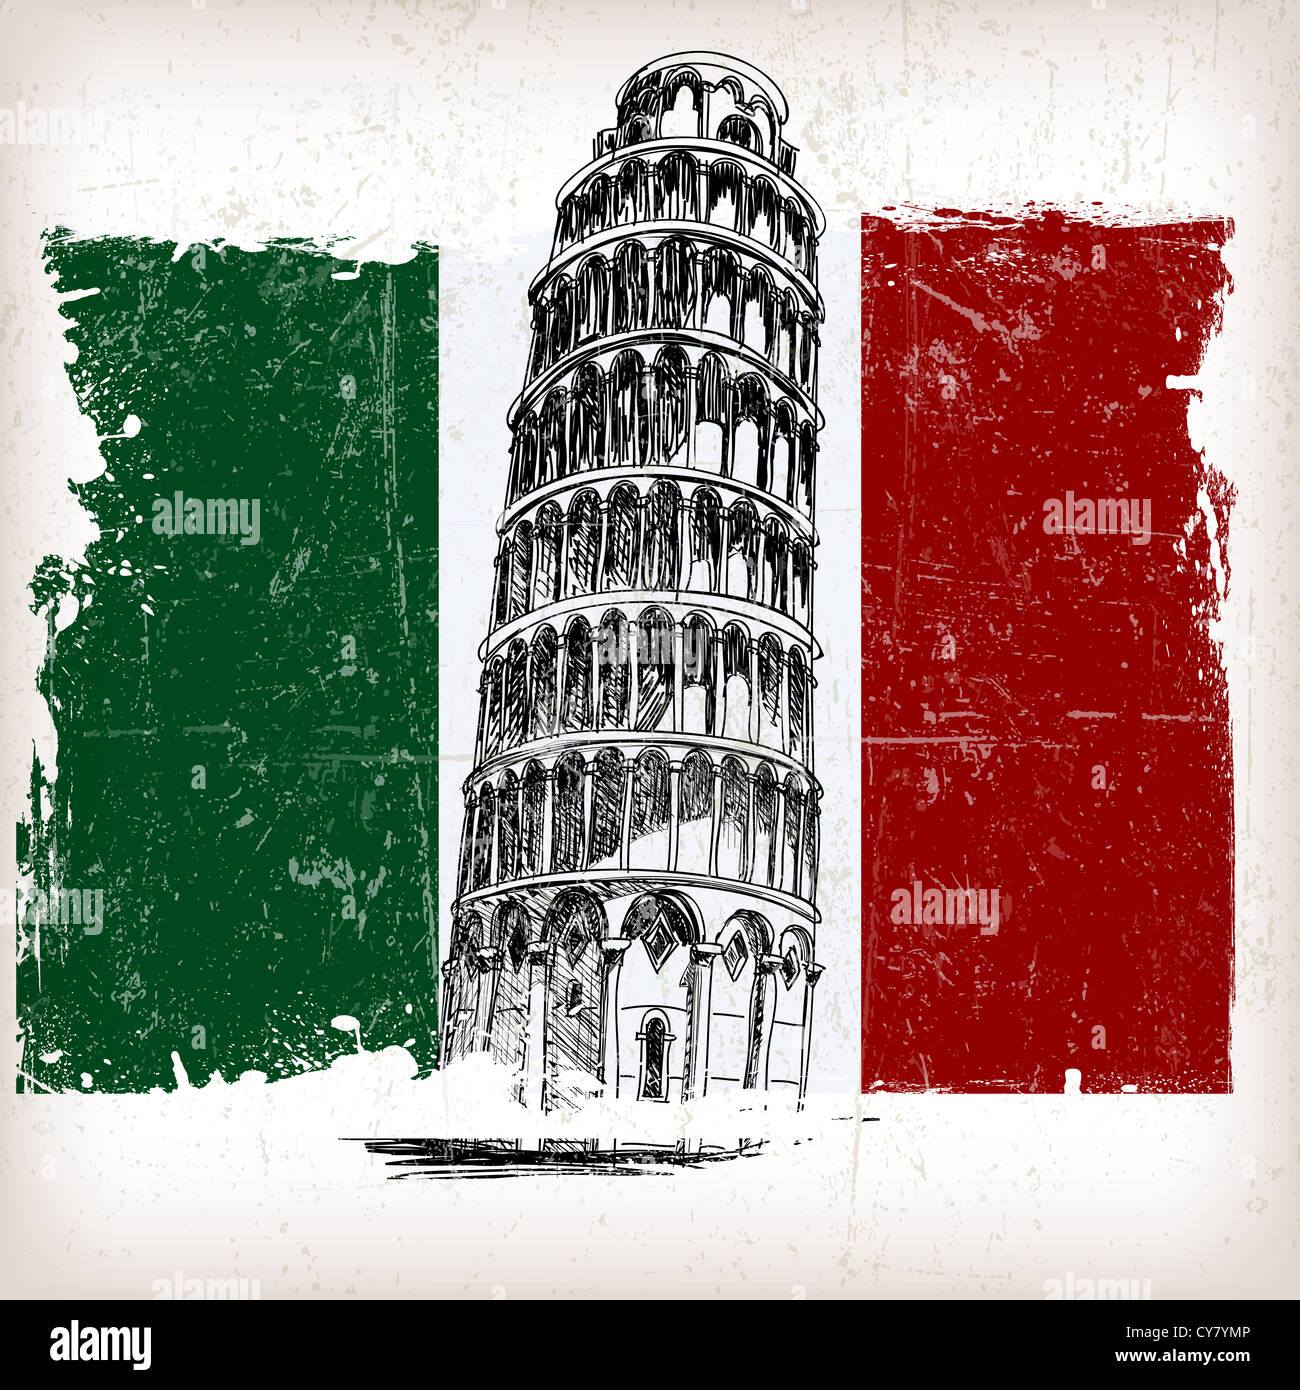 La tour penchée de Pise, le drapeau italien avec effet grunge Banque D'Images